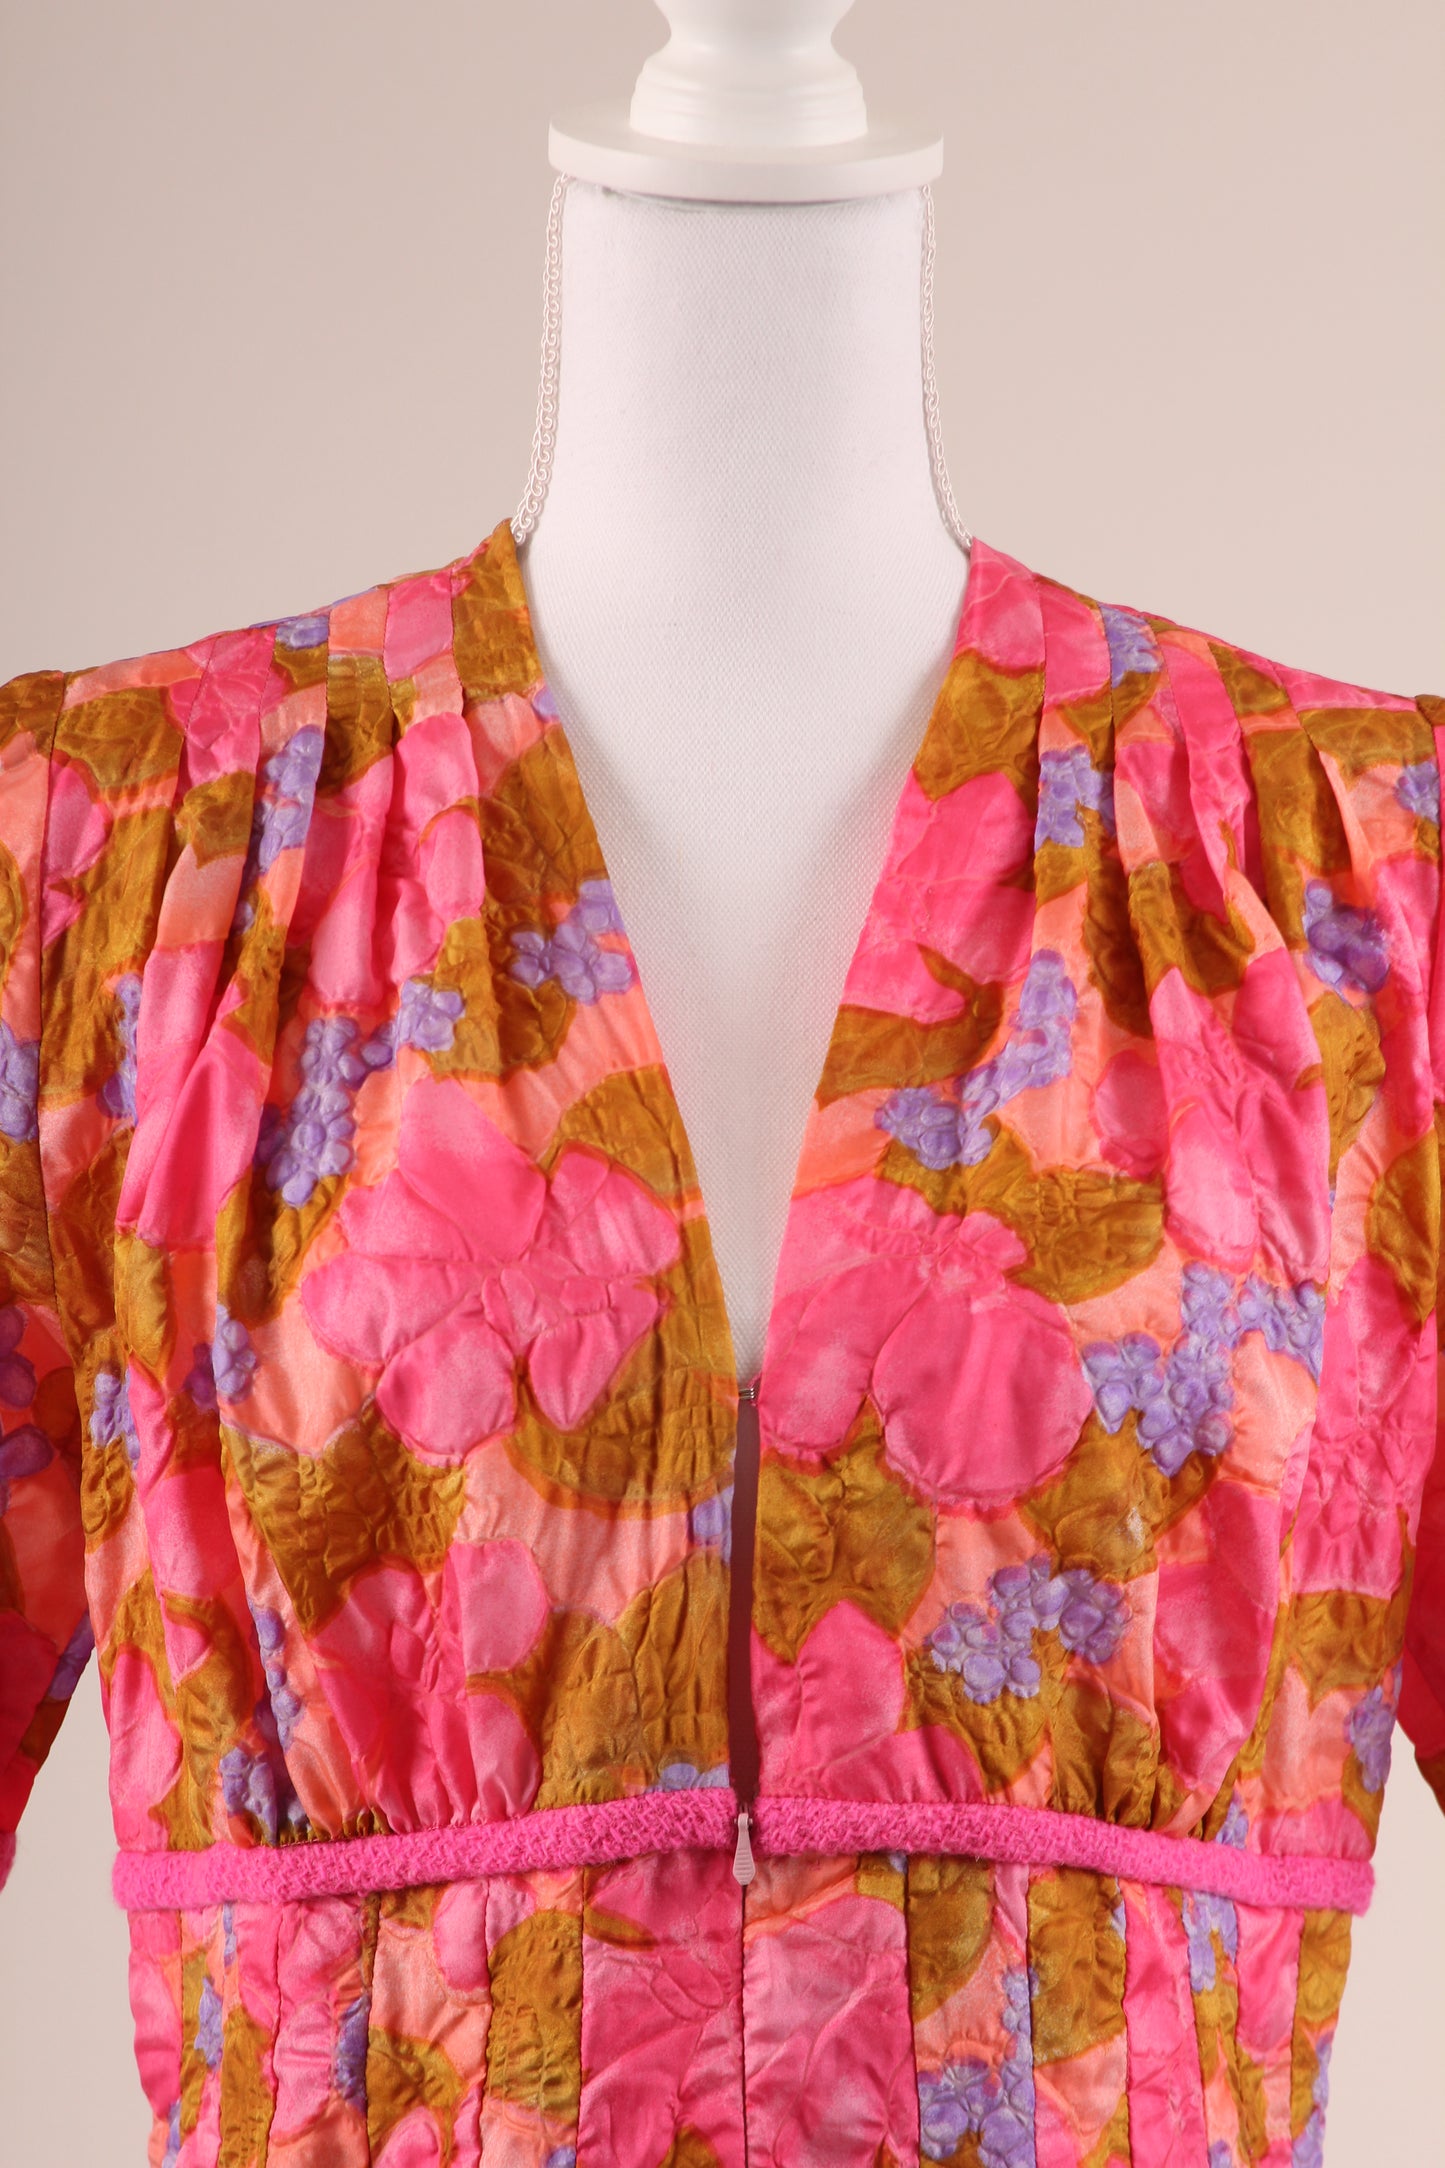 60's Floral Print Dress S/M